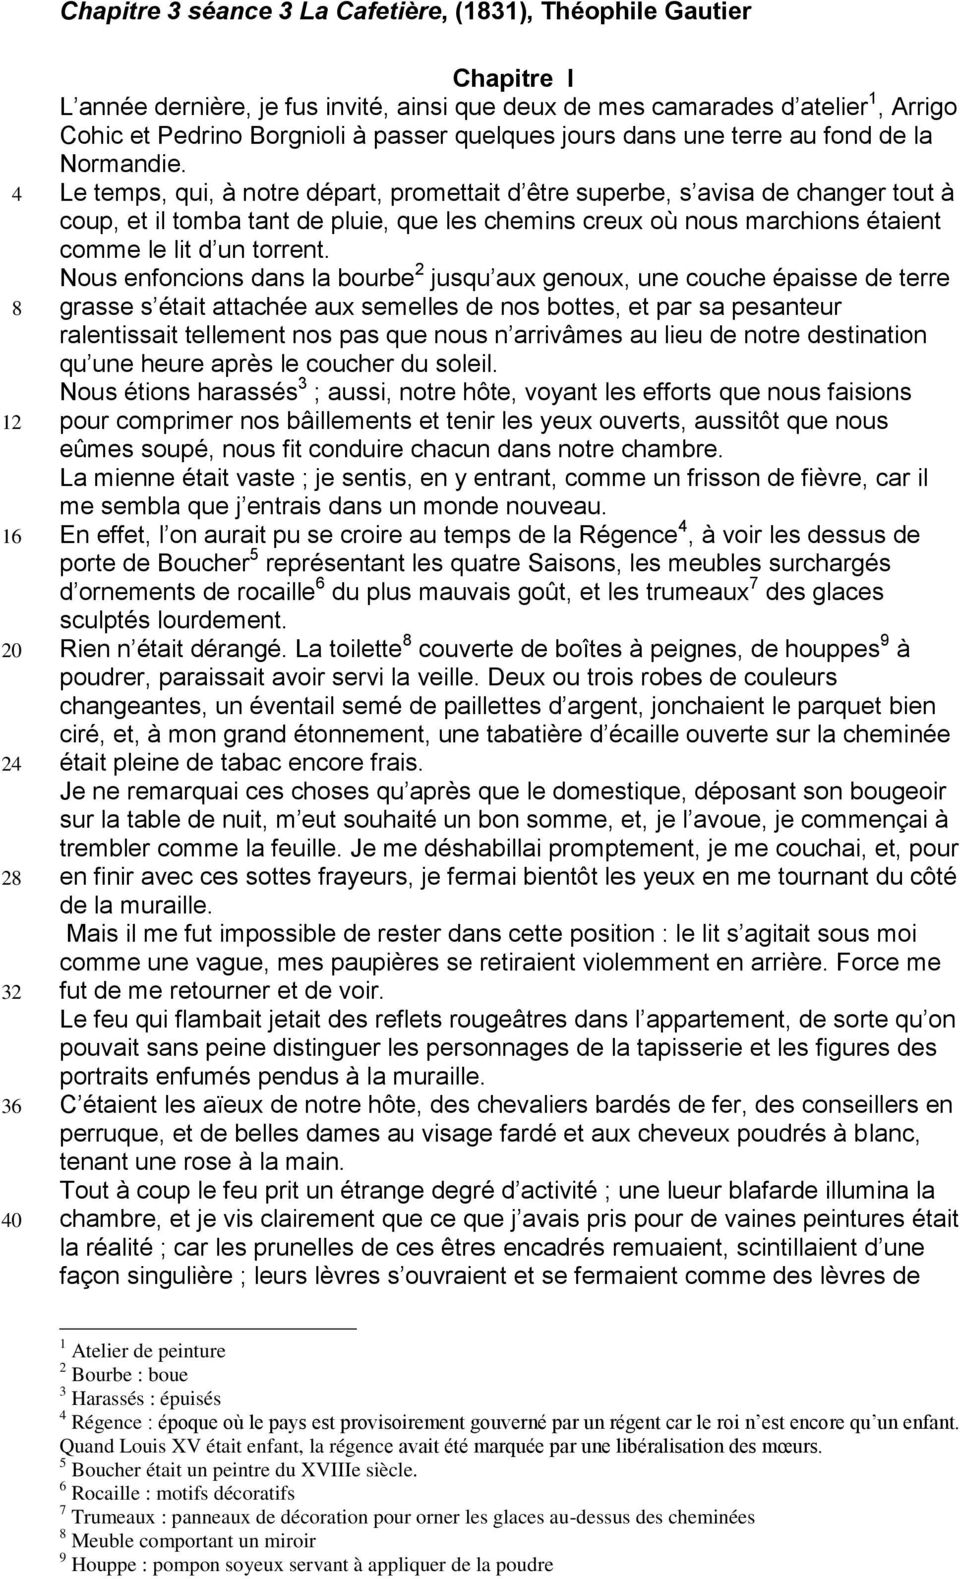 Chapitre 3 séance 3 La Cafetière, (1831), Théophile Gautier - PDF Free  Download